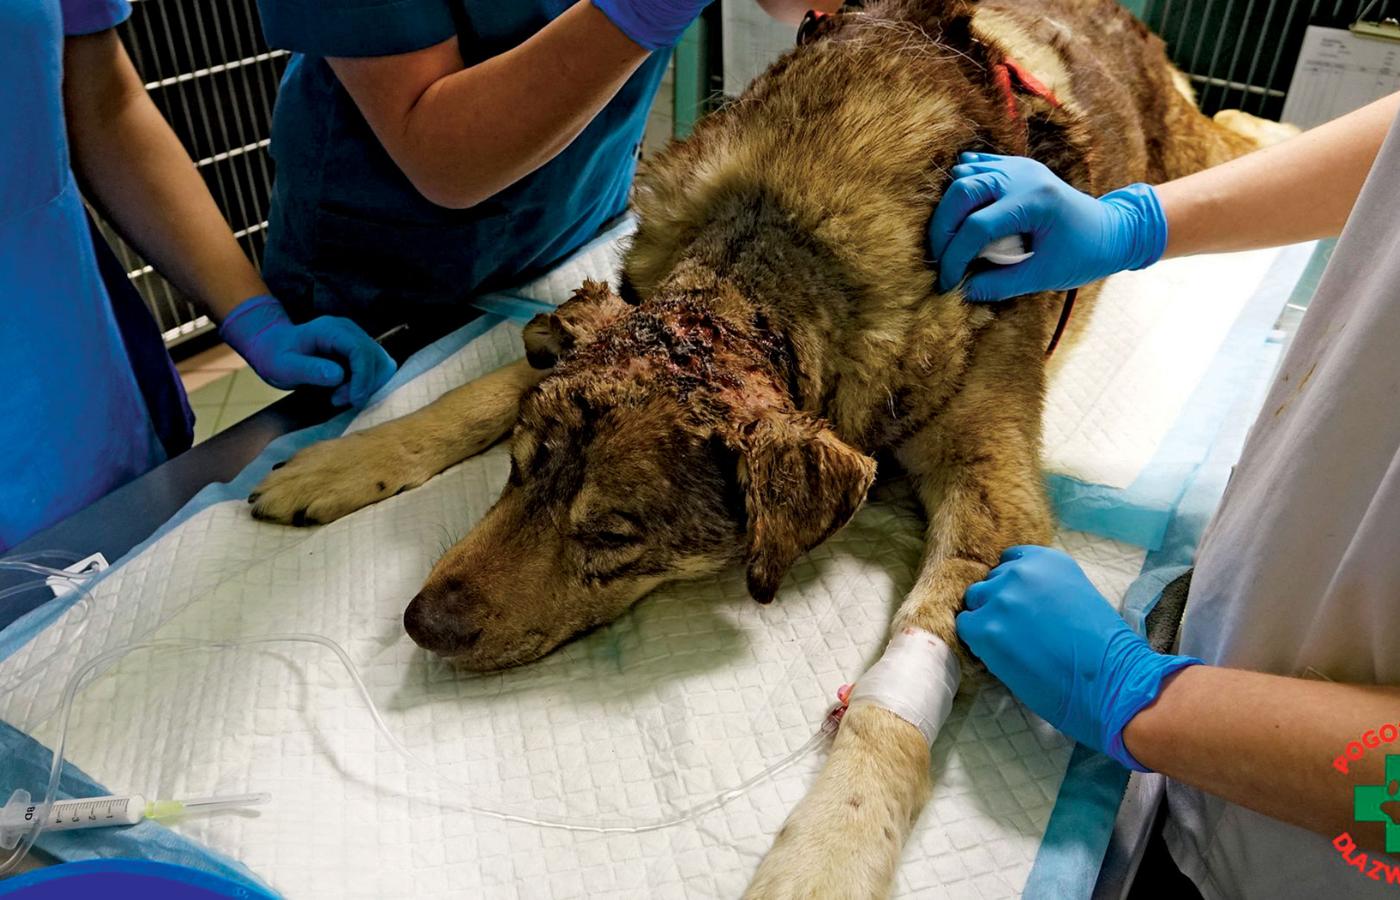 Siedmioletni Charon – jeden z psów uratowanych podczas interwencji w schronisku w Radysach. Miał głębokie rany po pogryzieniu.